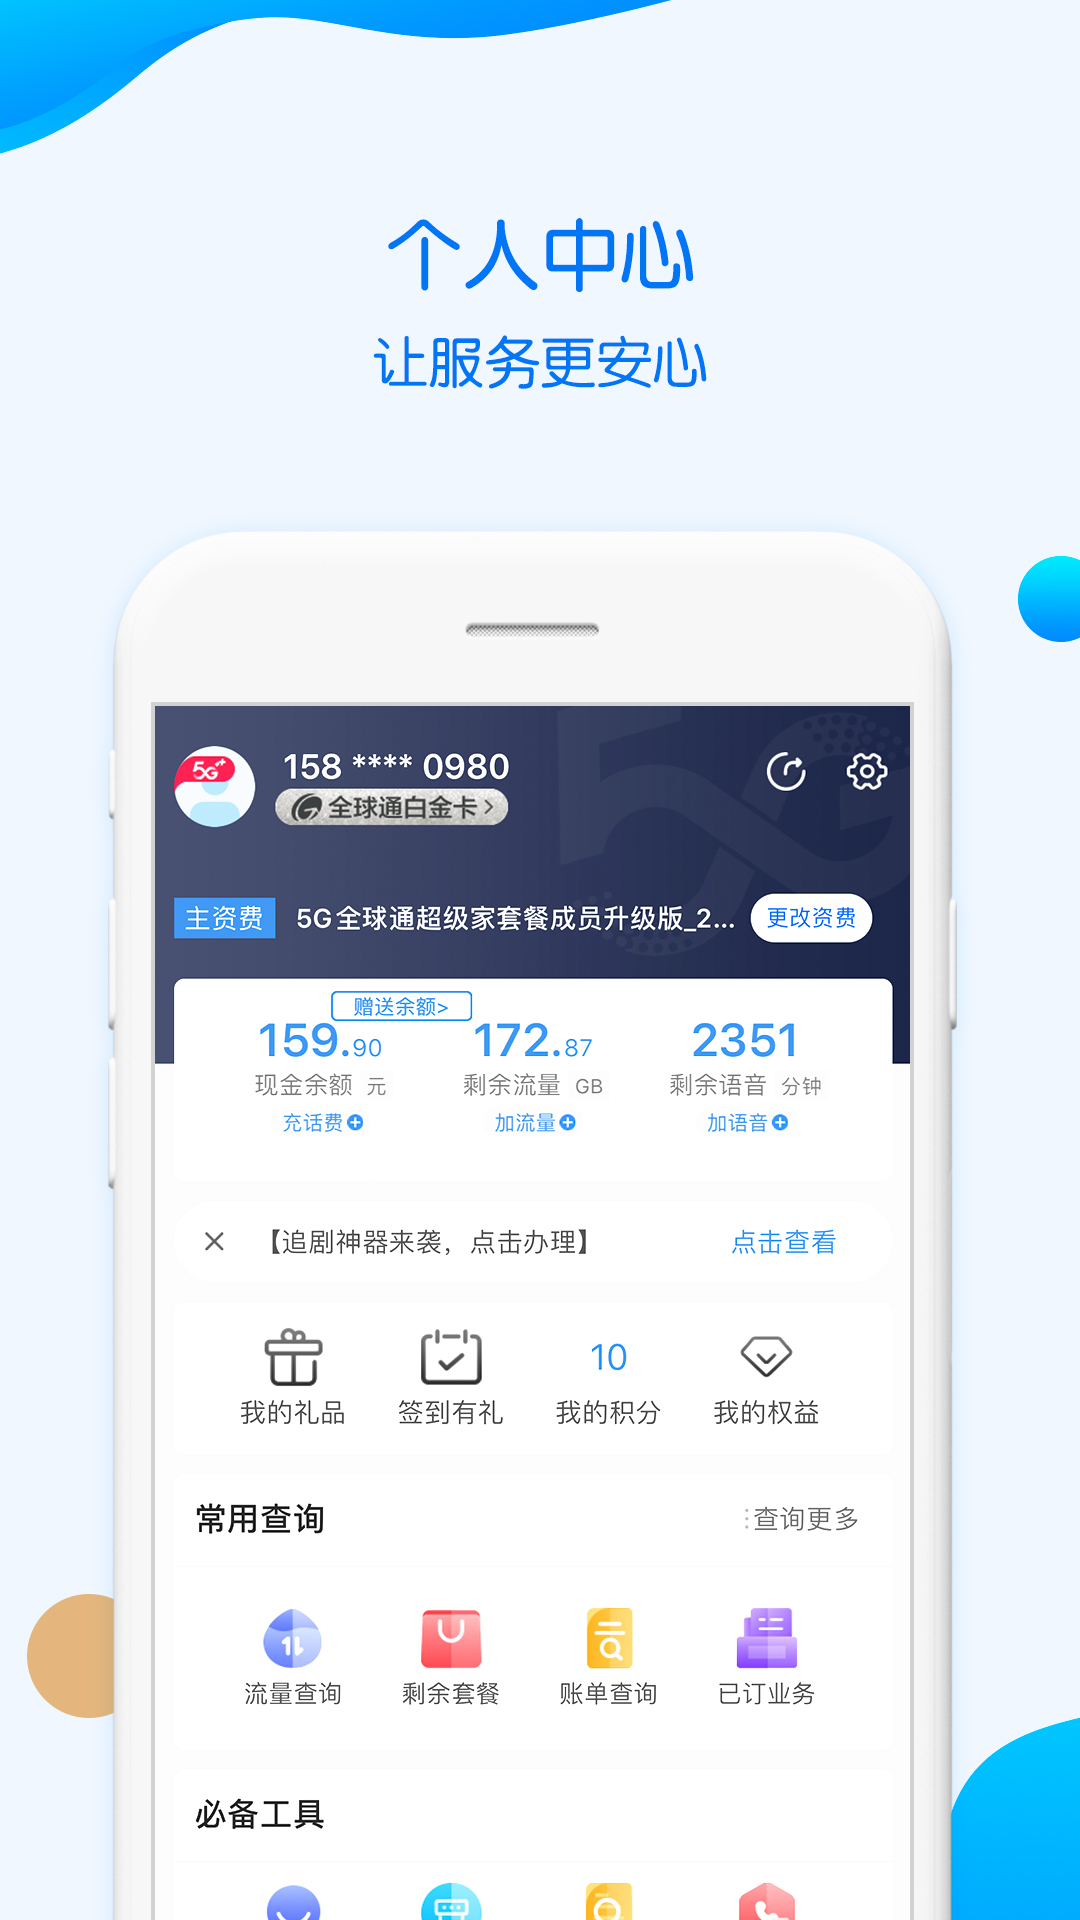 中国移动重庆app官方版(原重庆移动)